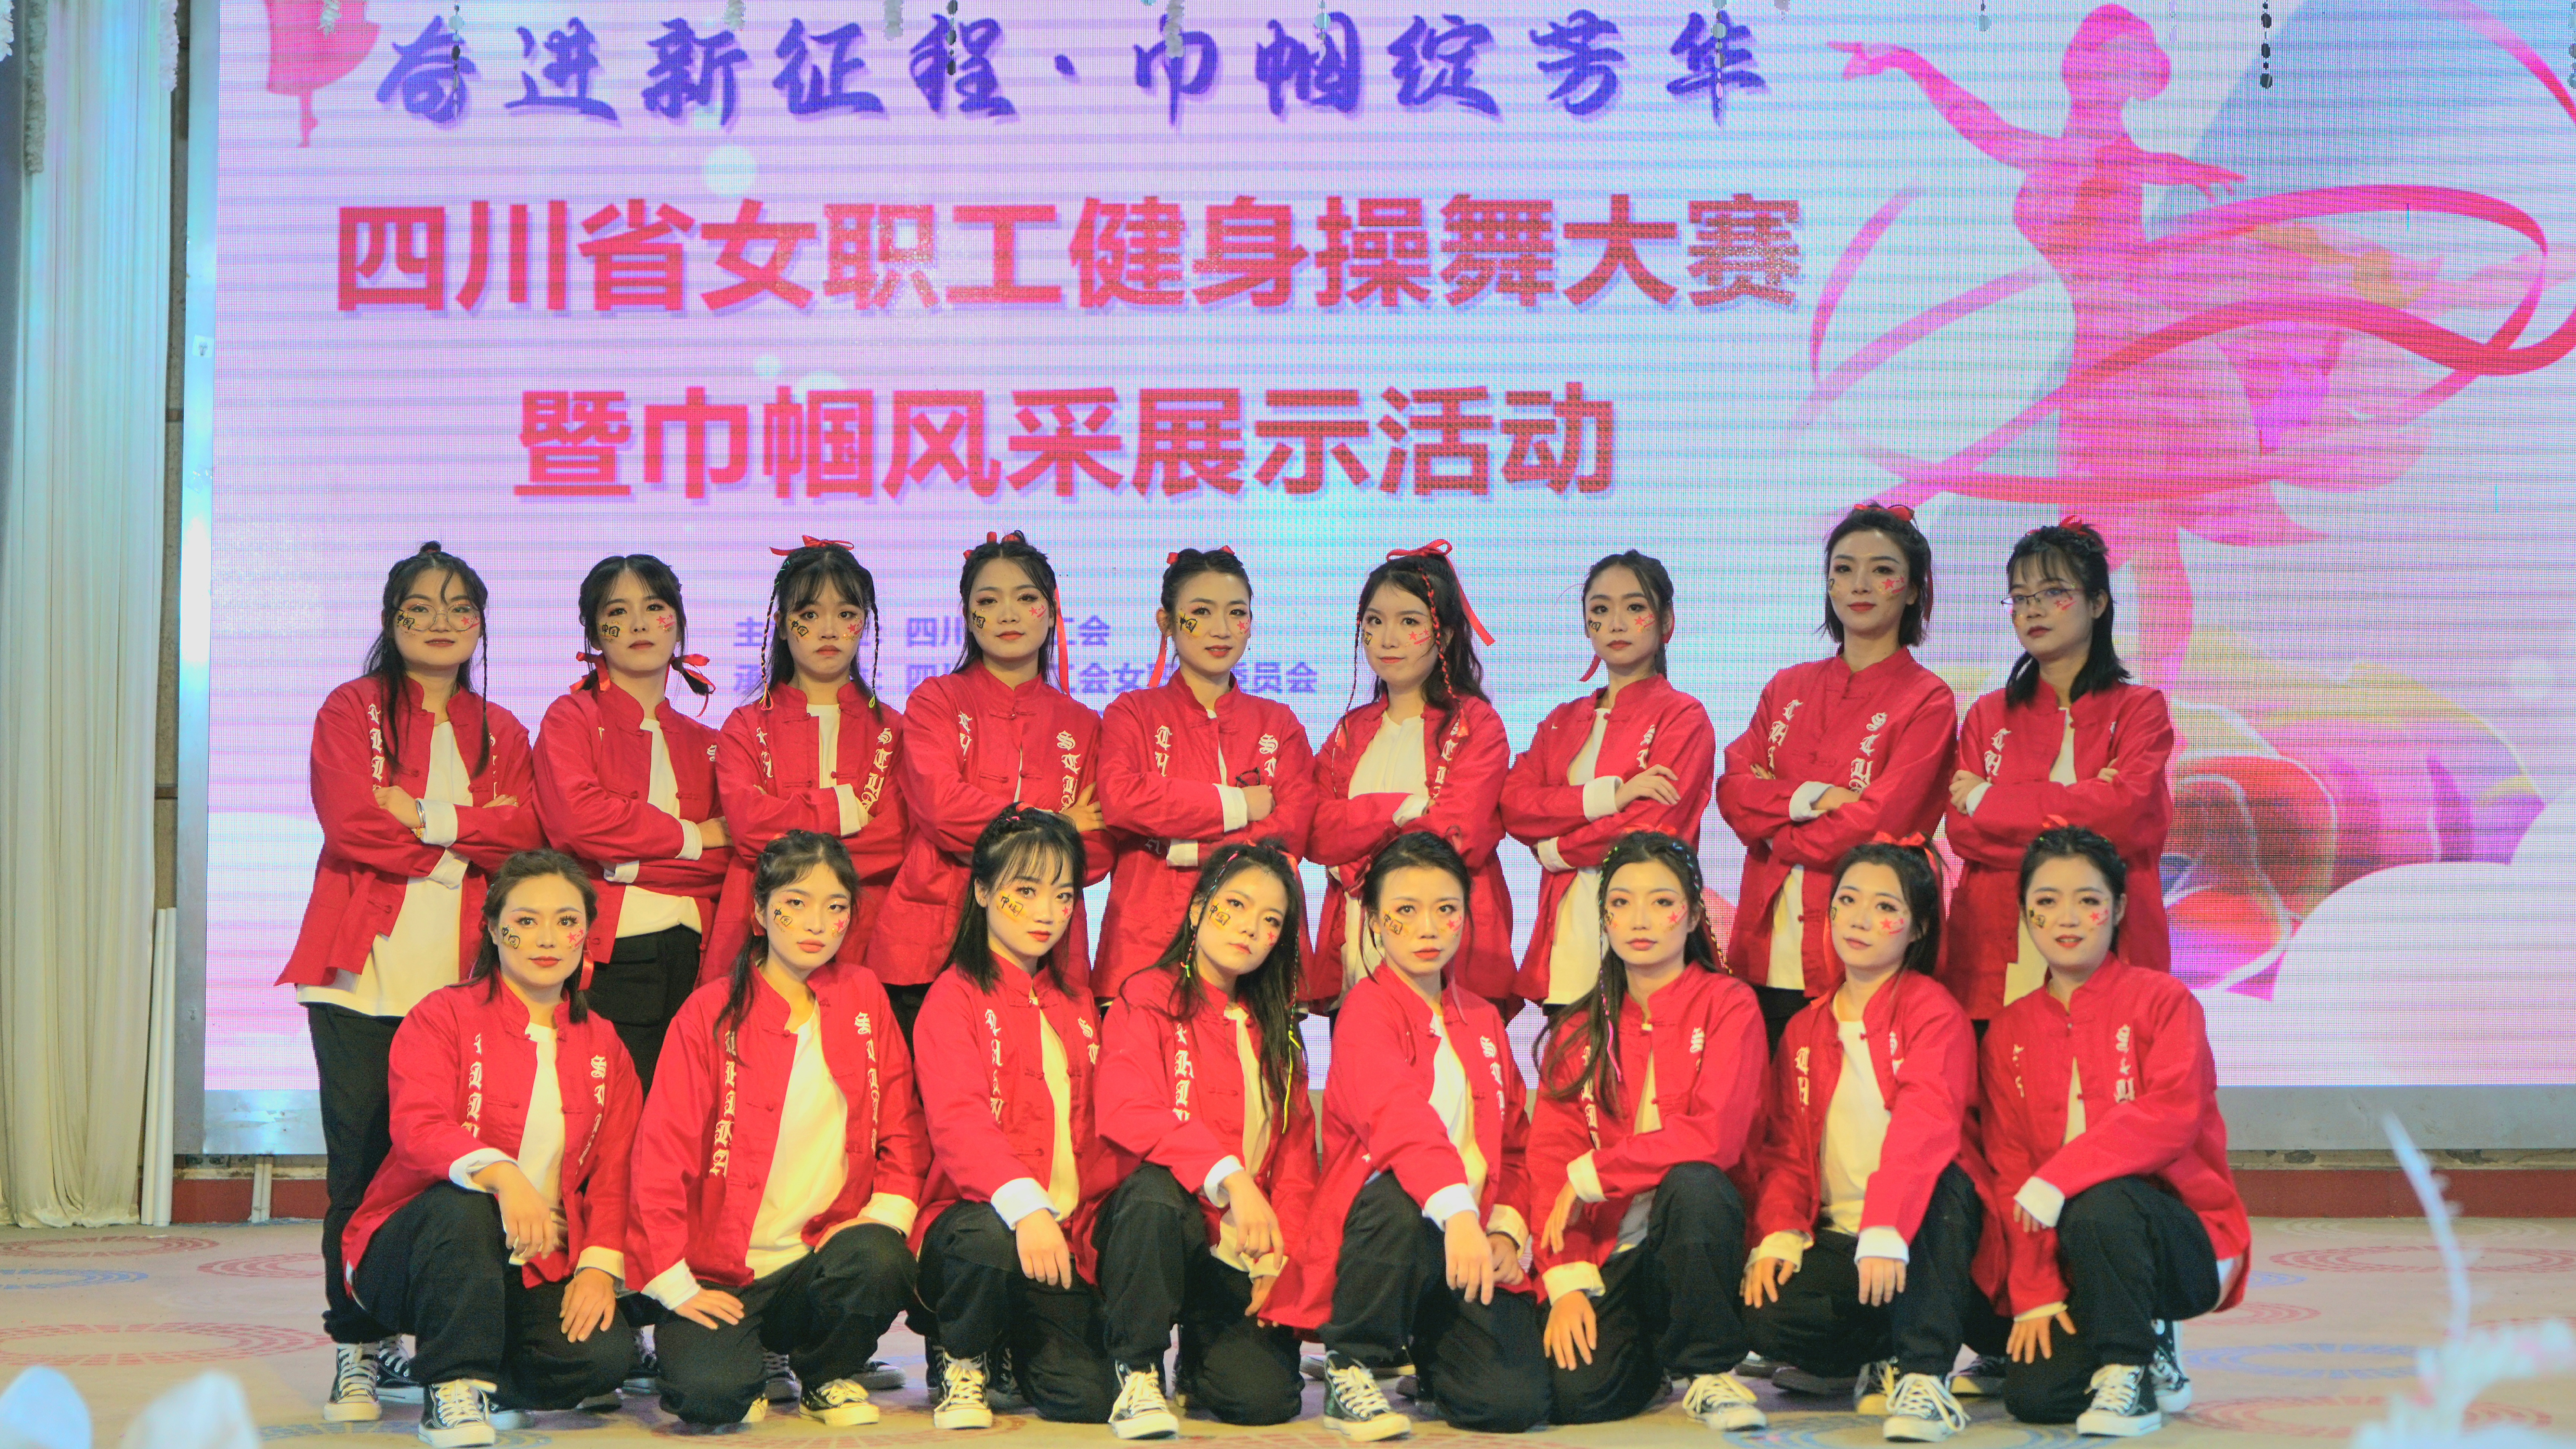 超A！五大队在四川省女职工健身操舞大赛中斩获佳绩